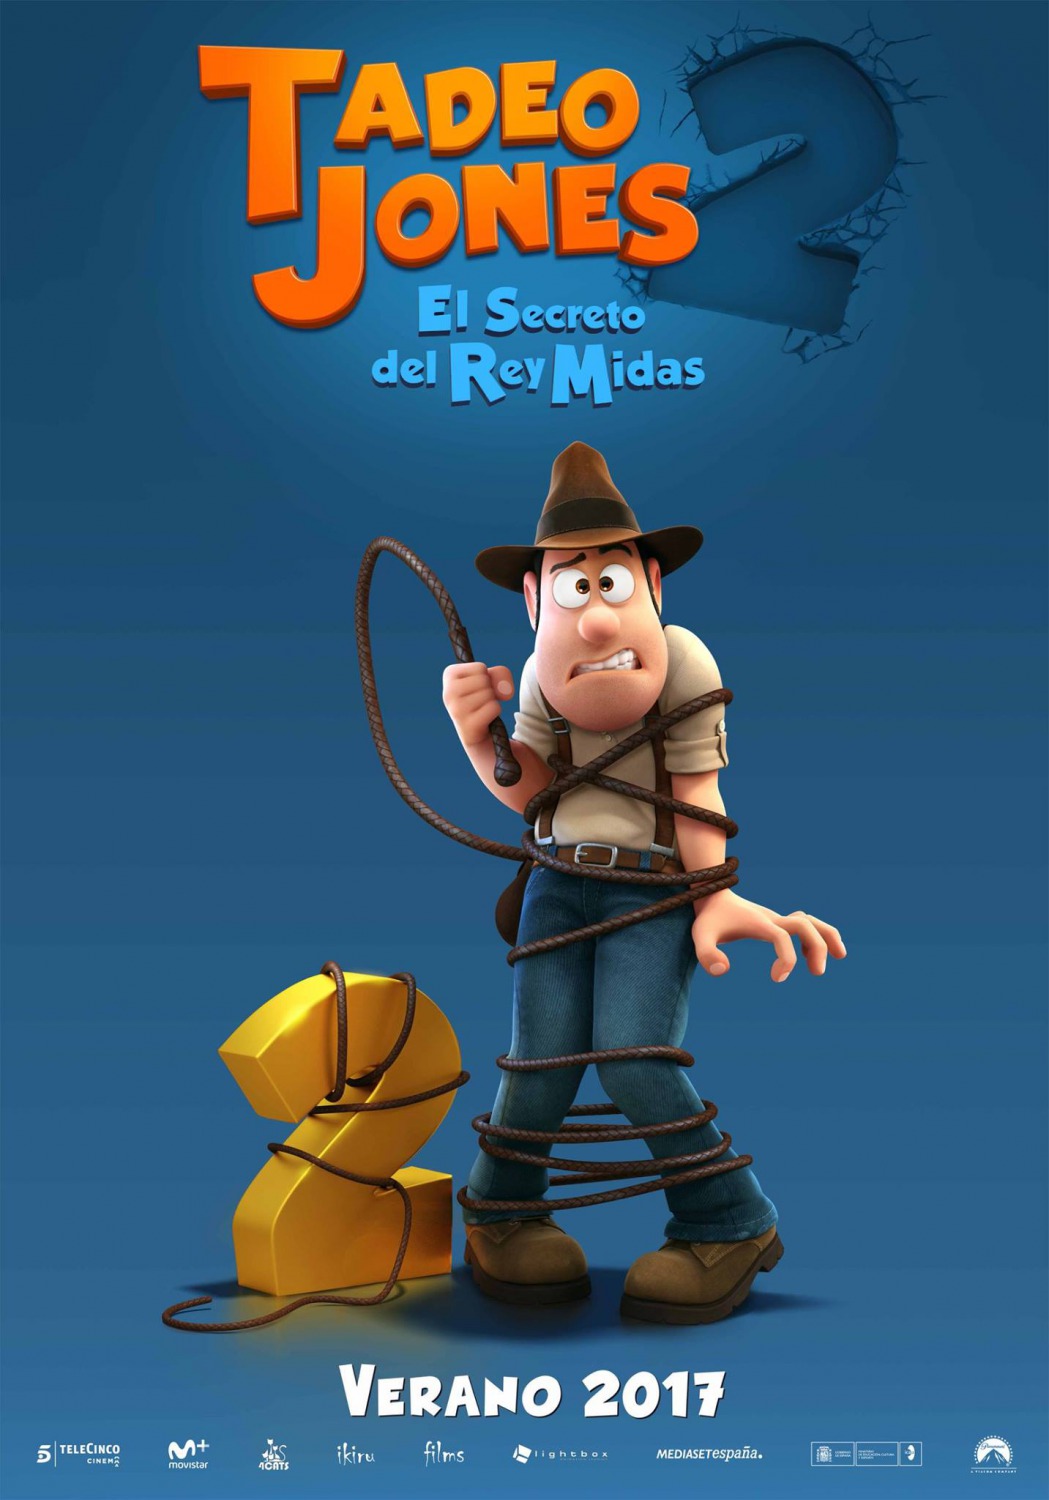 Extra Large Movie Poster Image for Tadeo Jones 2: El Secreto del Rey Midas 